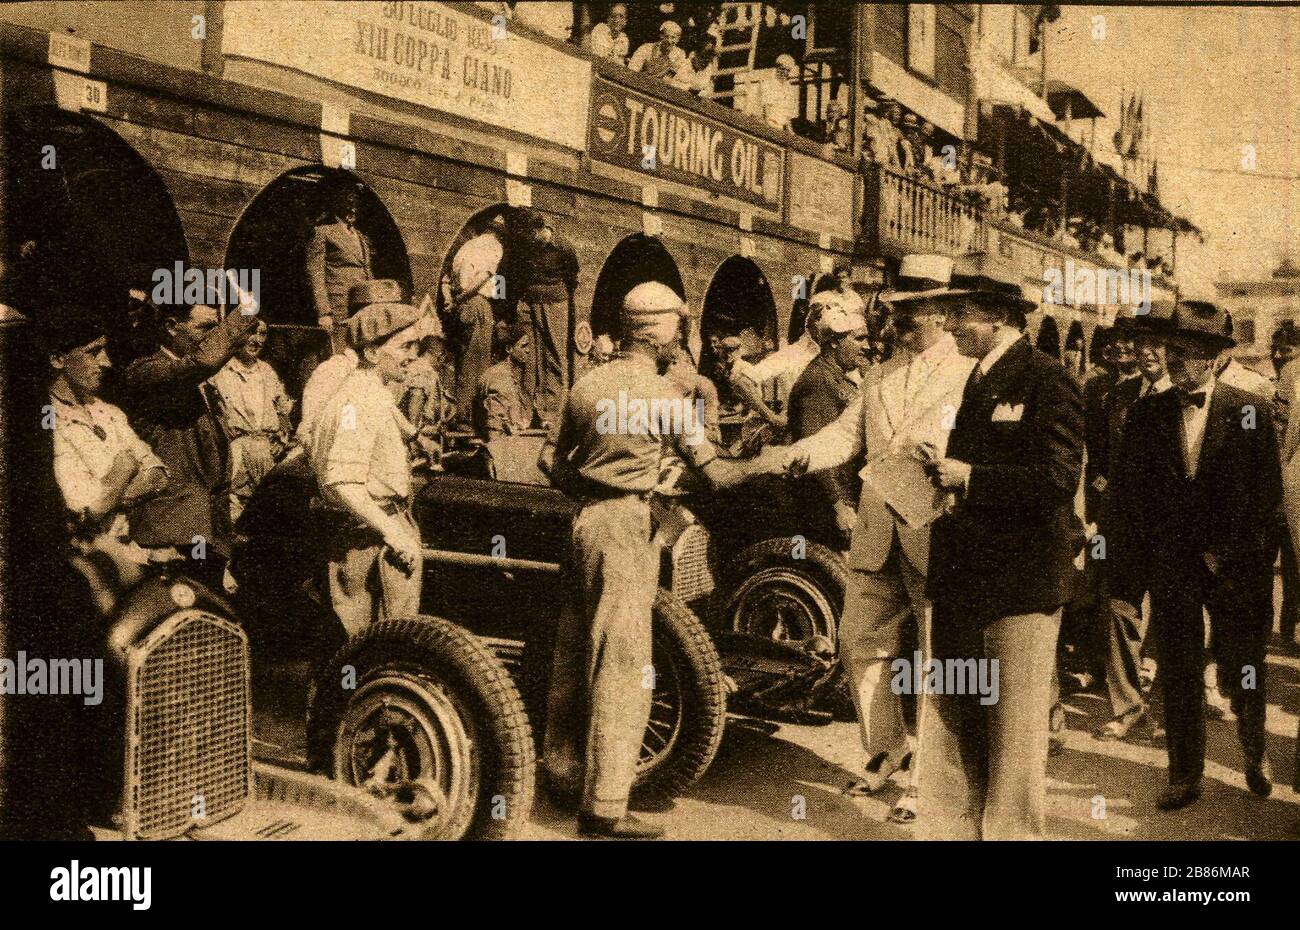 L'inglese: S. E. Costanza Ciano scuote le mani con driver Maserati Tazio  Nuvolari al XIII Coppa Ciano sulla luglio 30, 1933. Il banner dice 30  luglio 1933 XIII Coppa Ciano. Nella parte